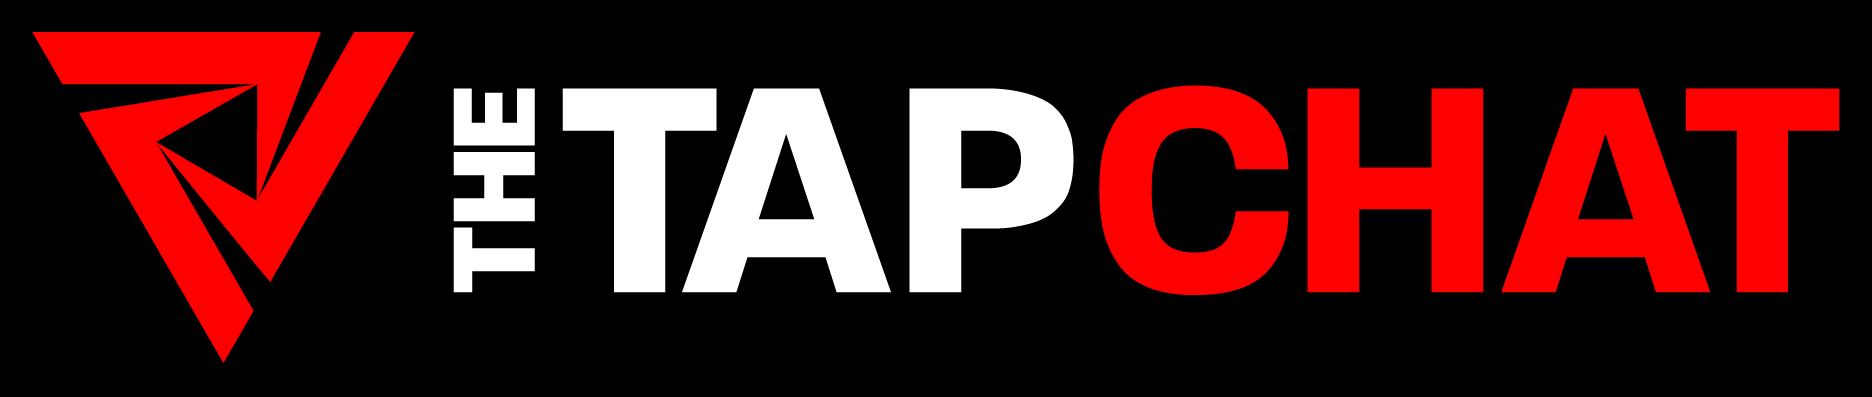 Tap Chat Logo